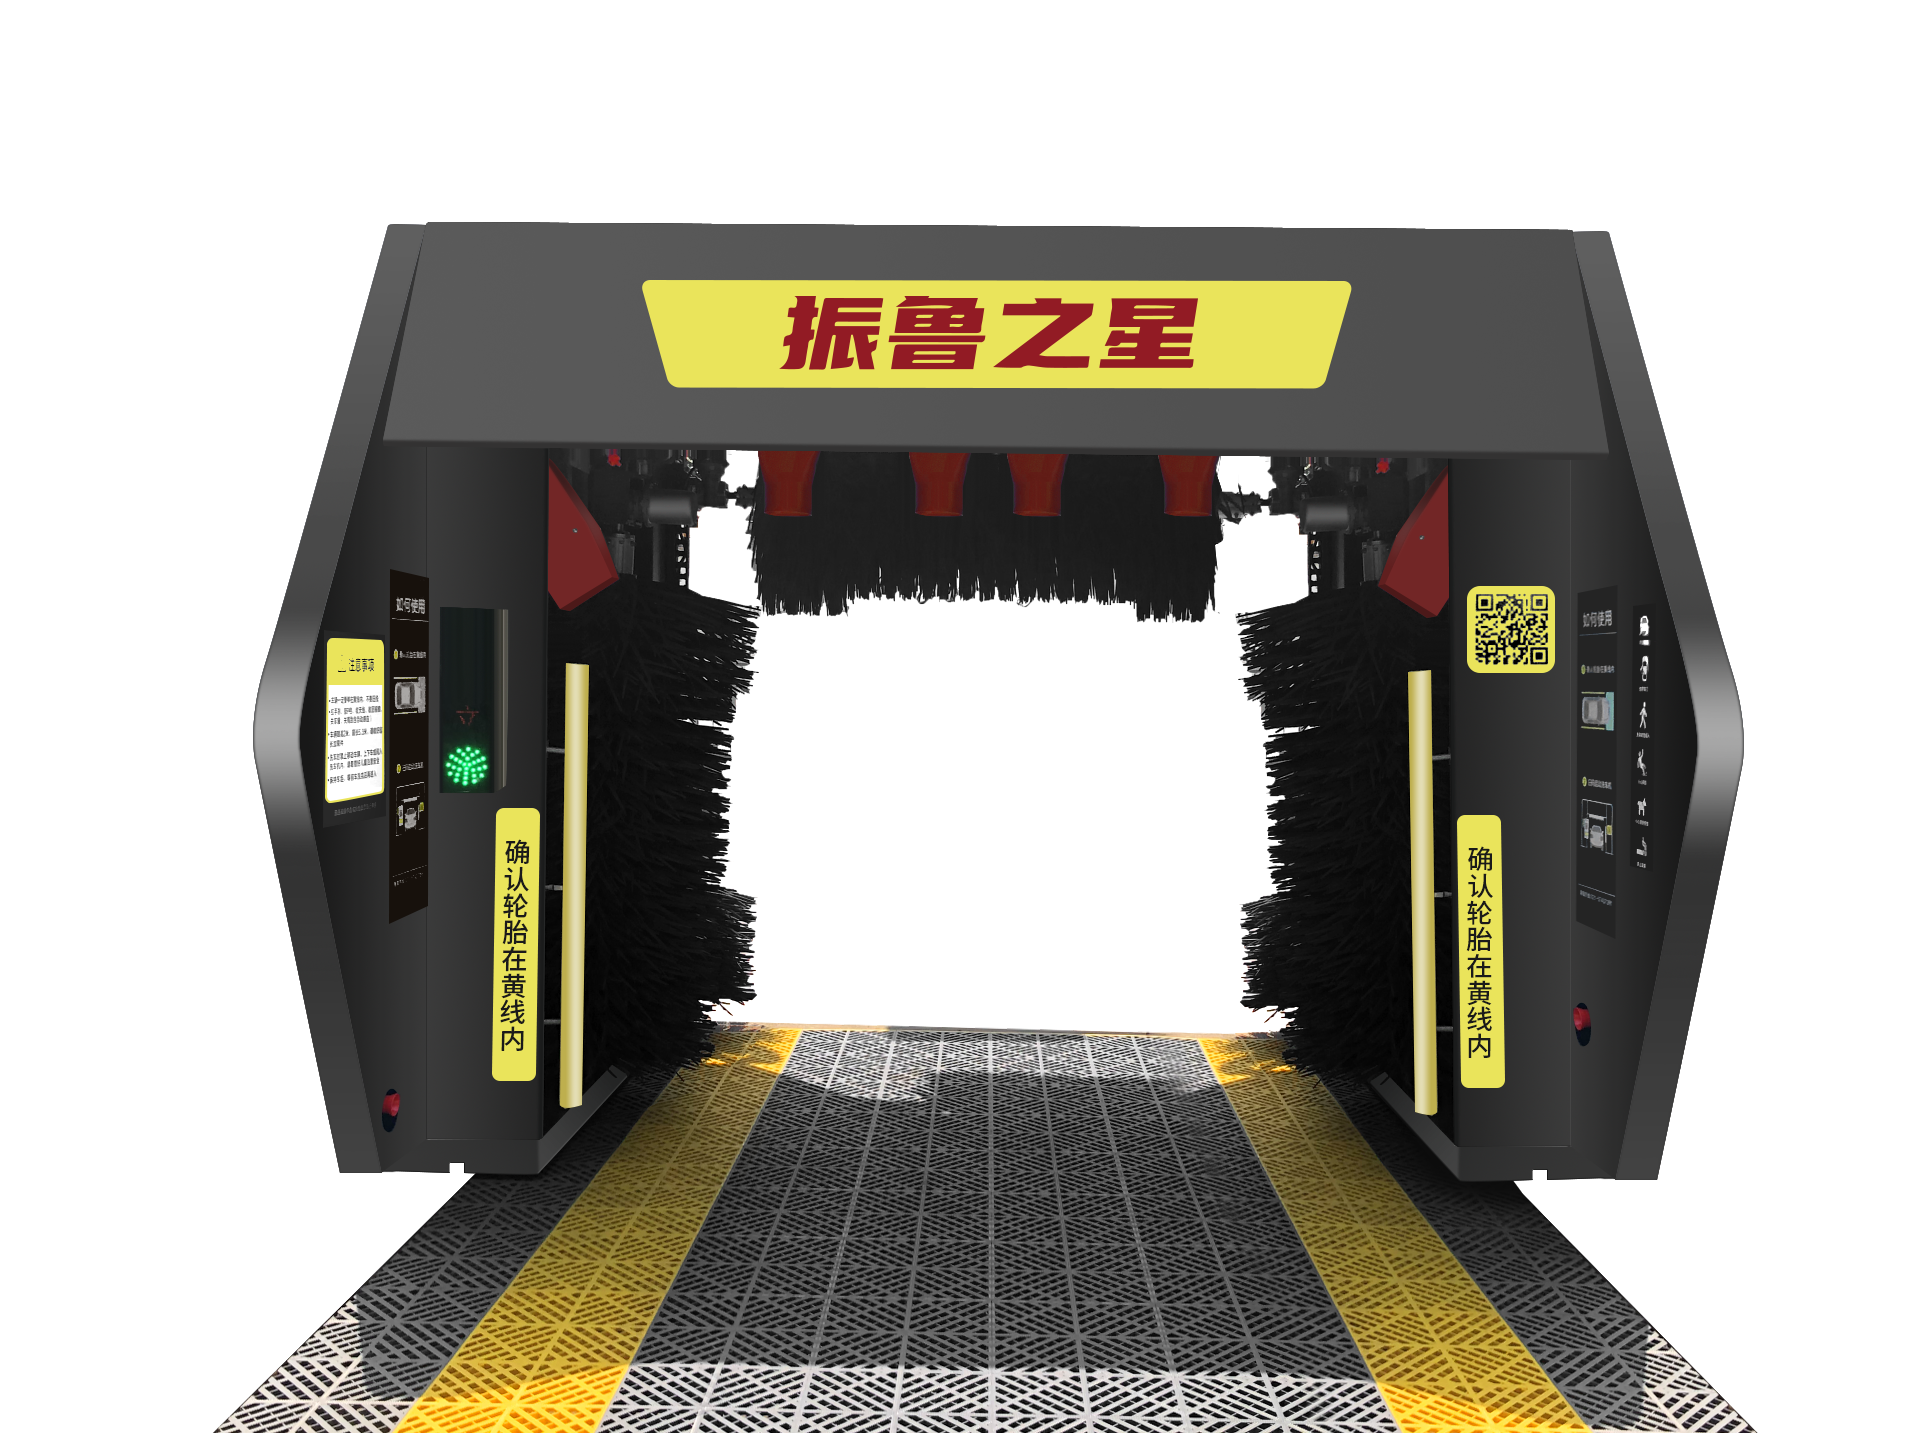 许昌隧道通过式自动洗车机4S店 加油站使用